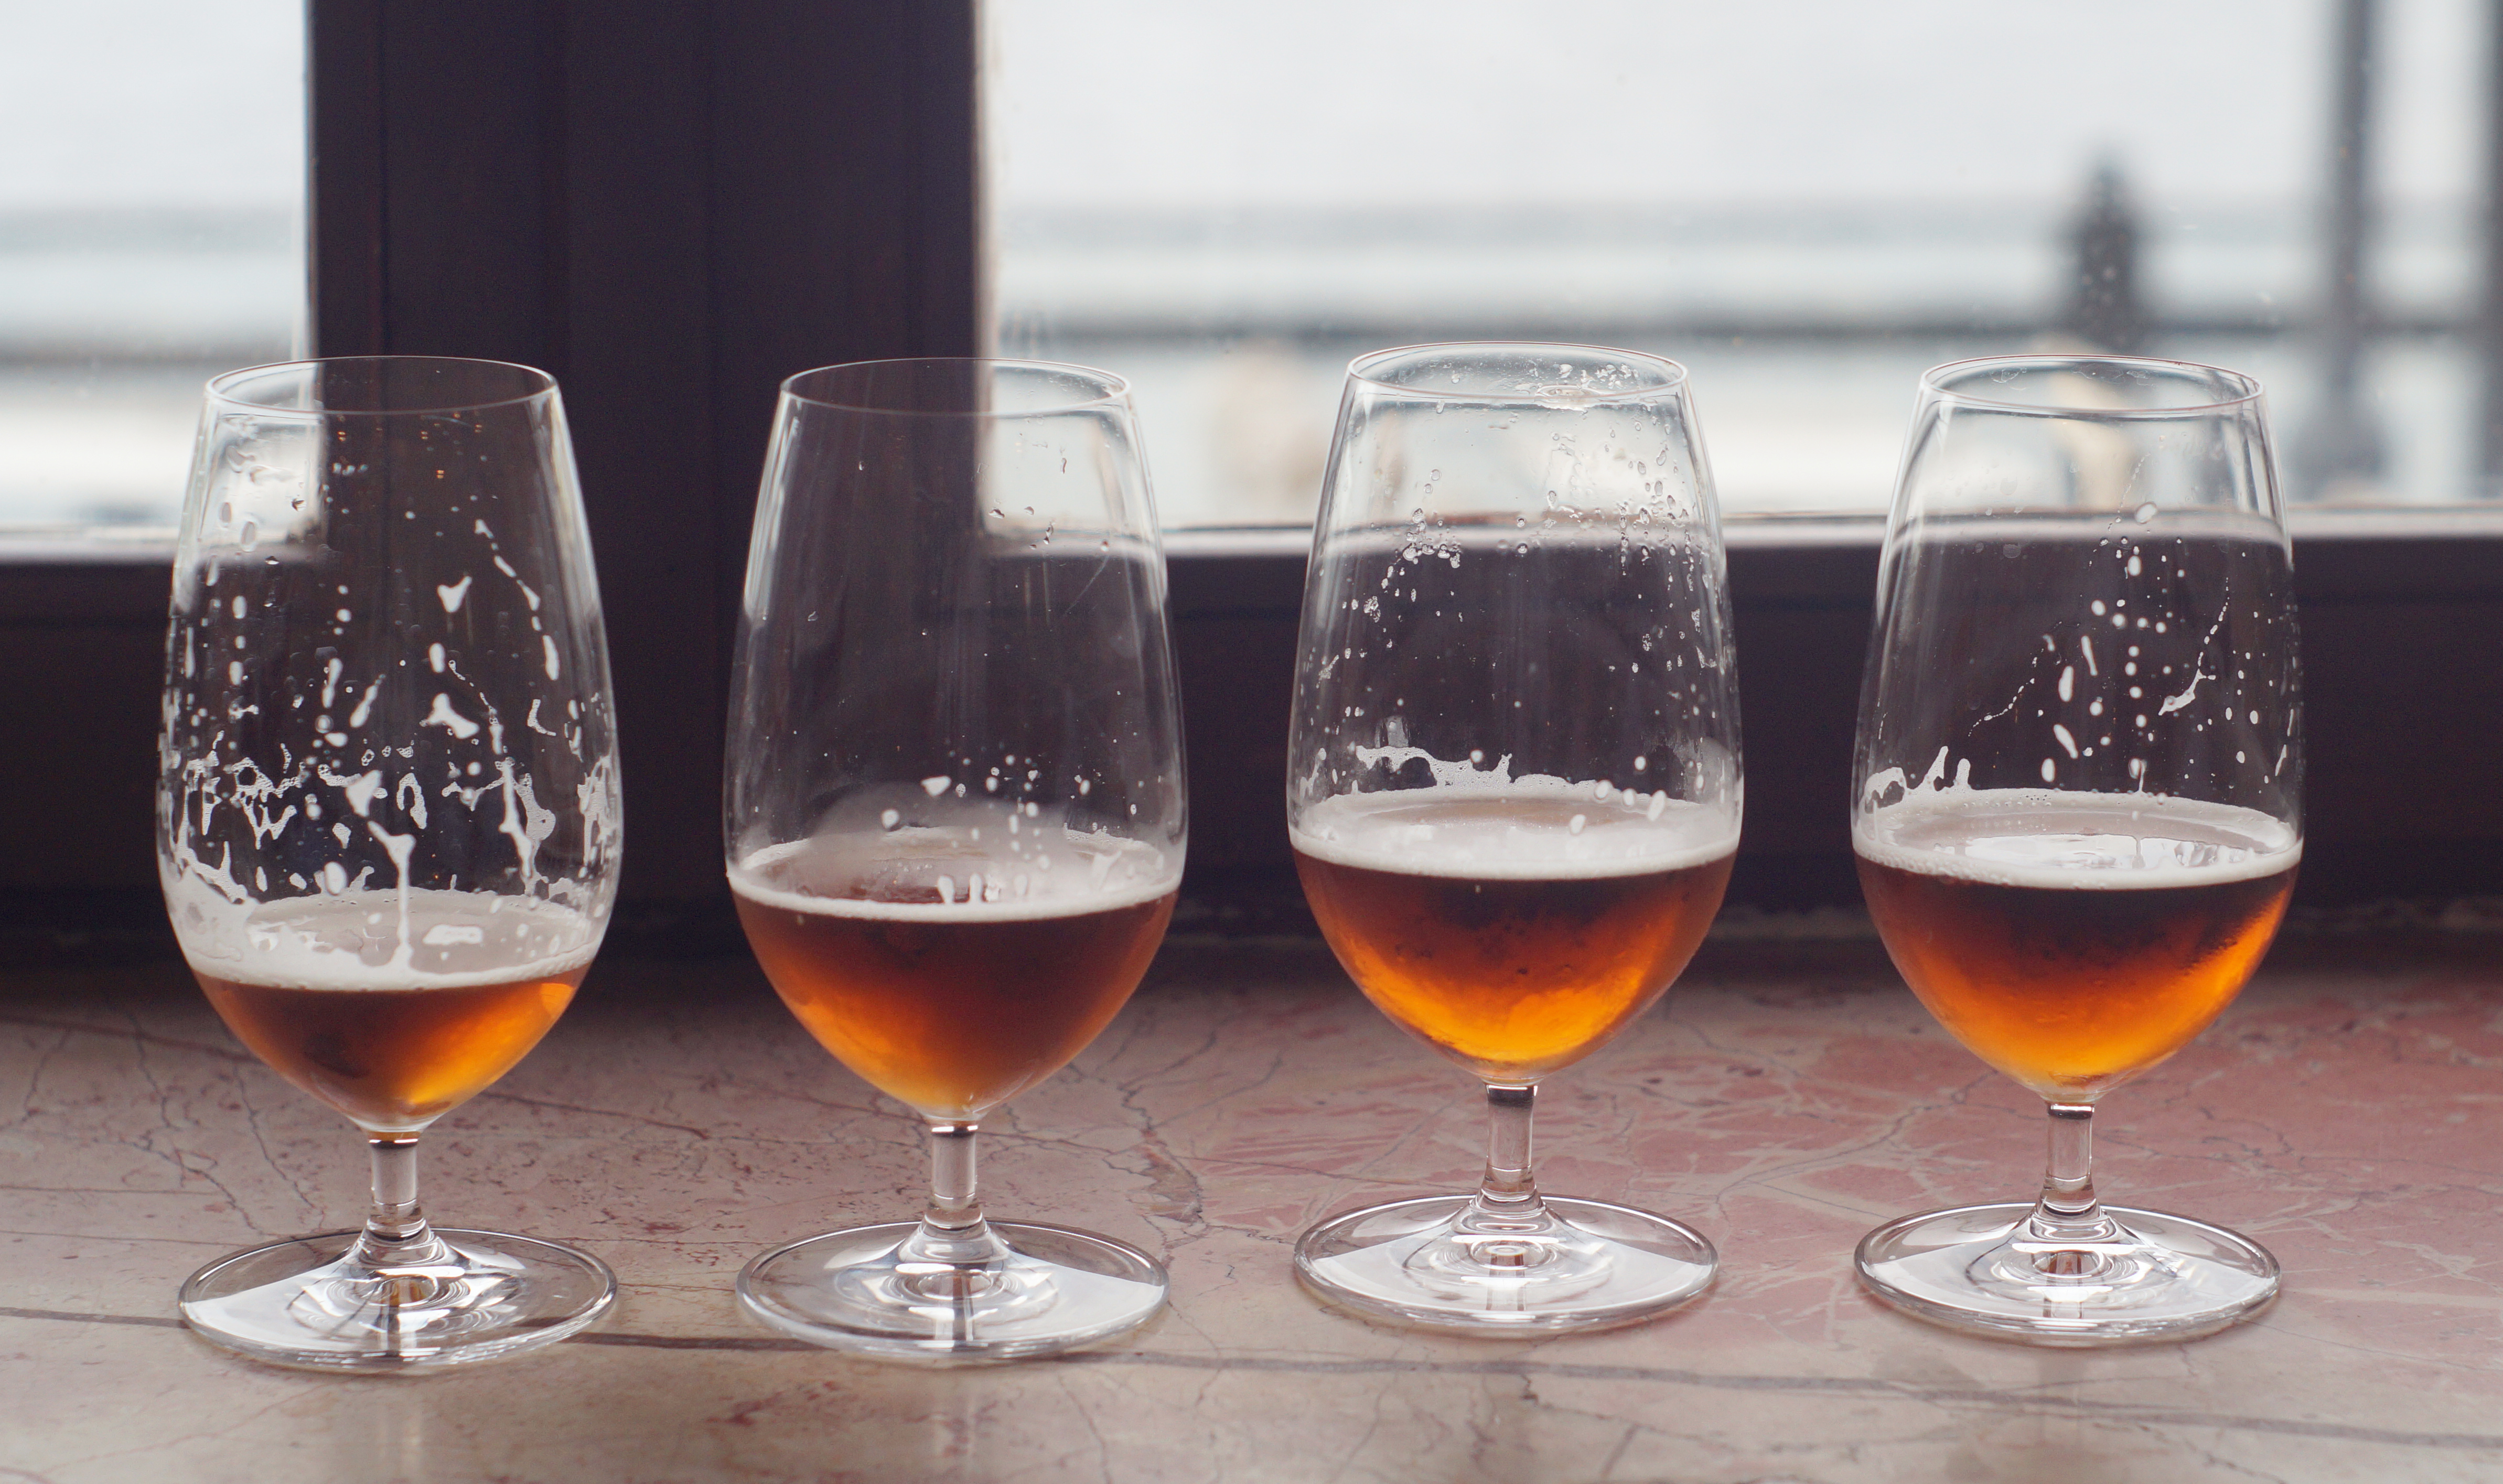 Hindistan için geliştirilen IPA biraları turuncu renkleri, narenciyemsi aromaları ve acımsı tadlarıyla ünlü.